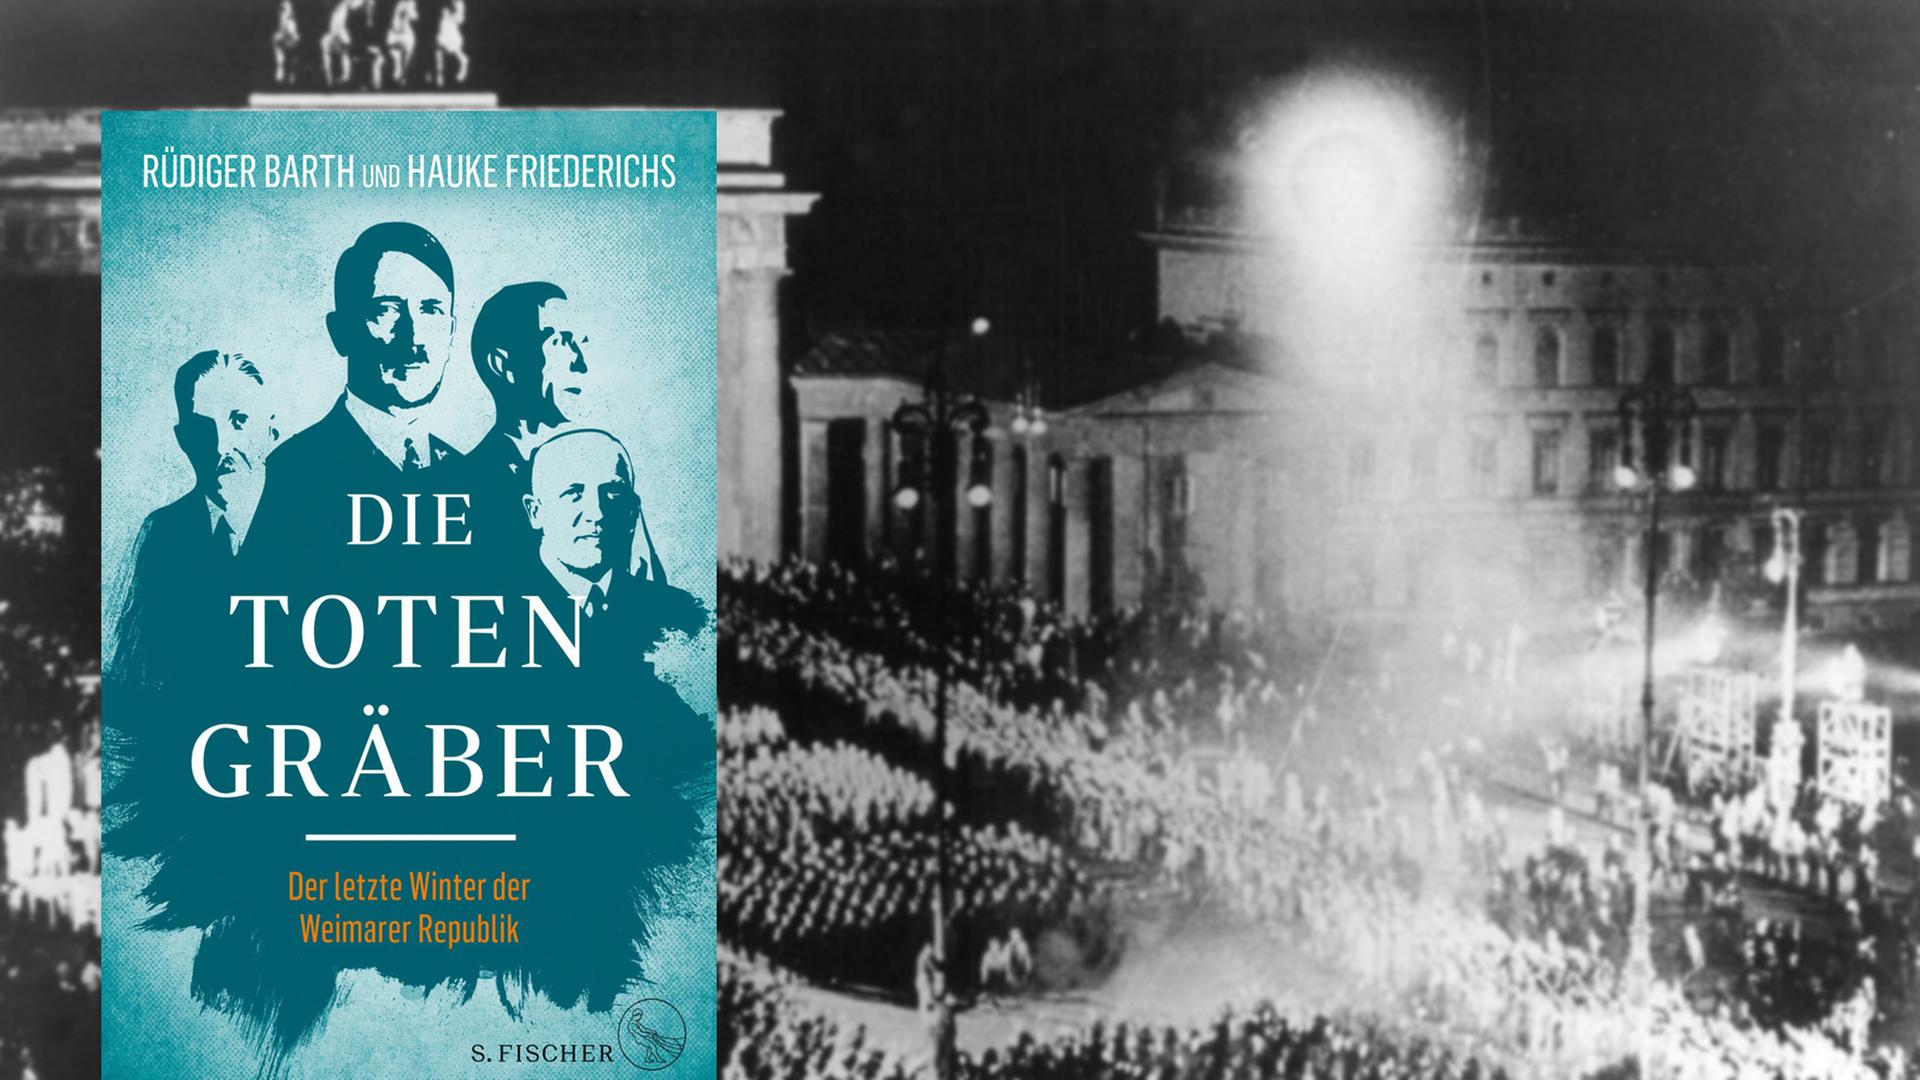 Buchcover Rüdiger Barth, Hauke Friedrichs: "Die Totengräber"